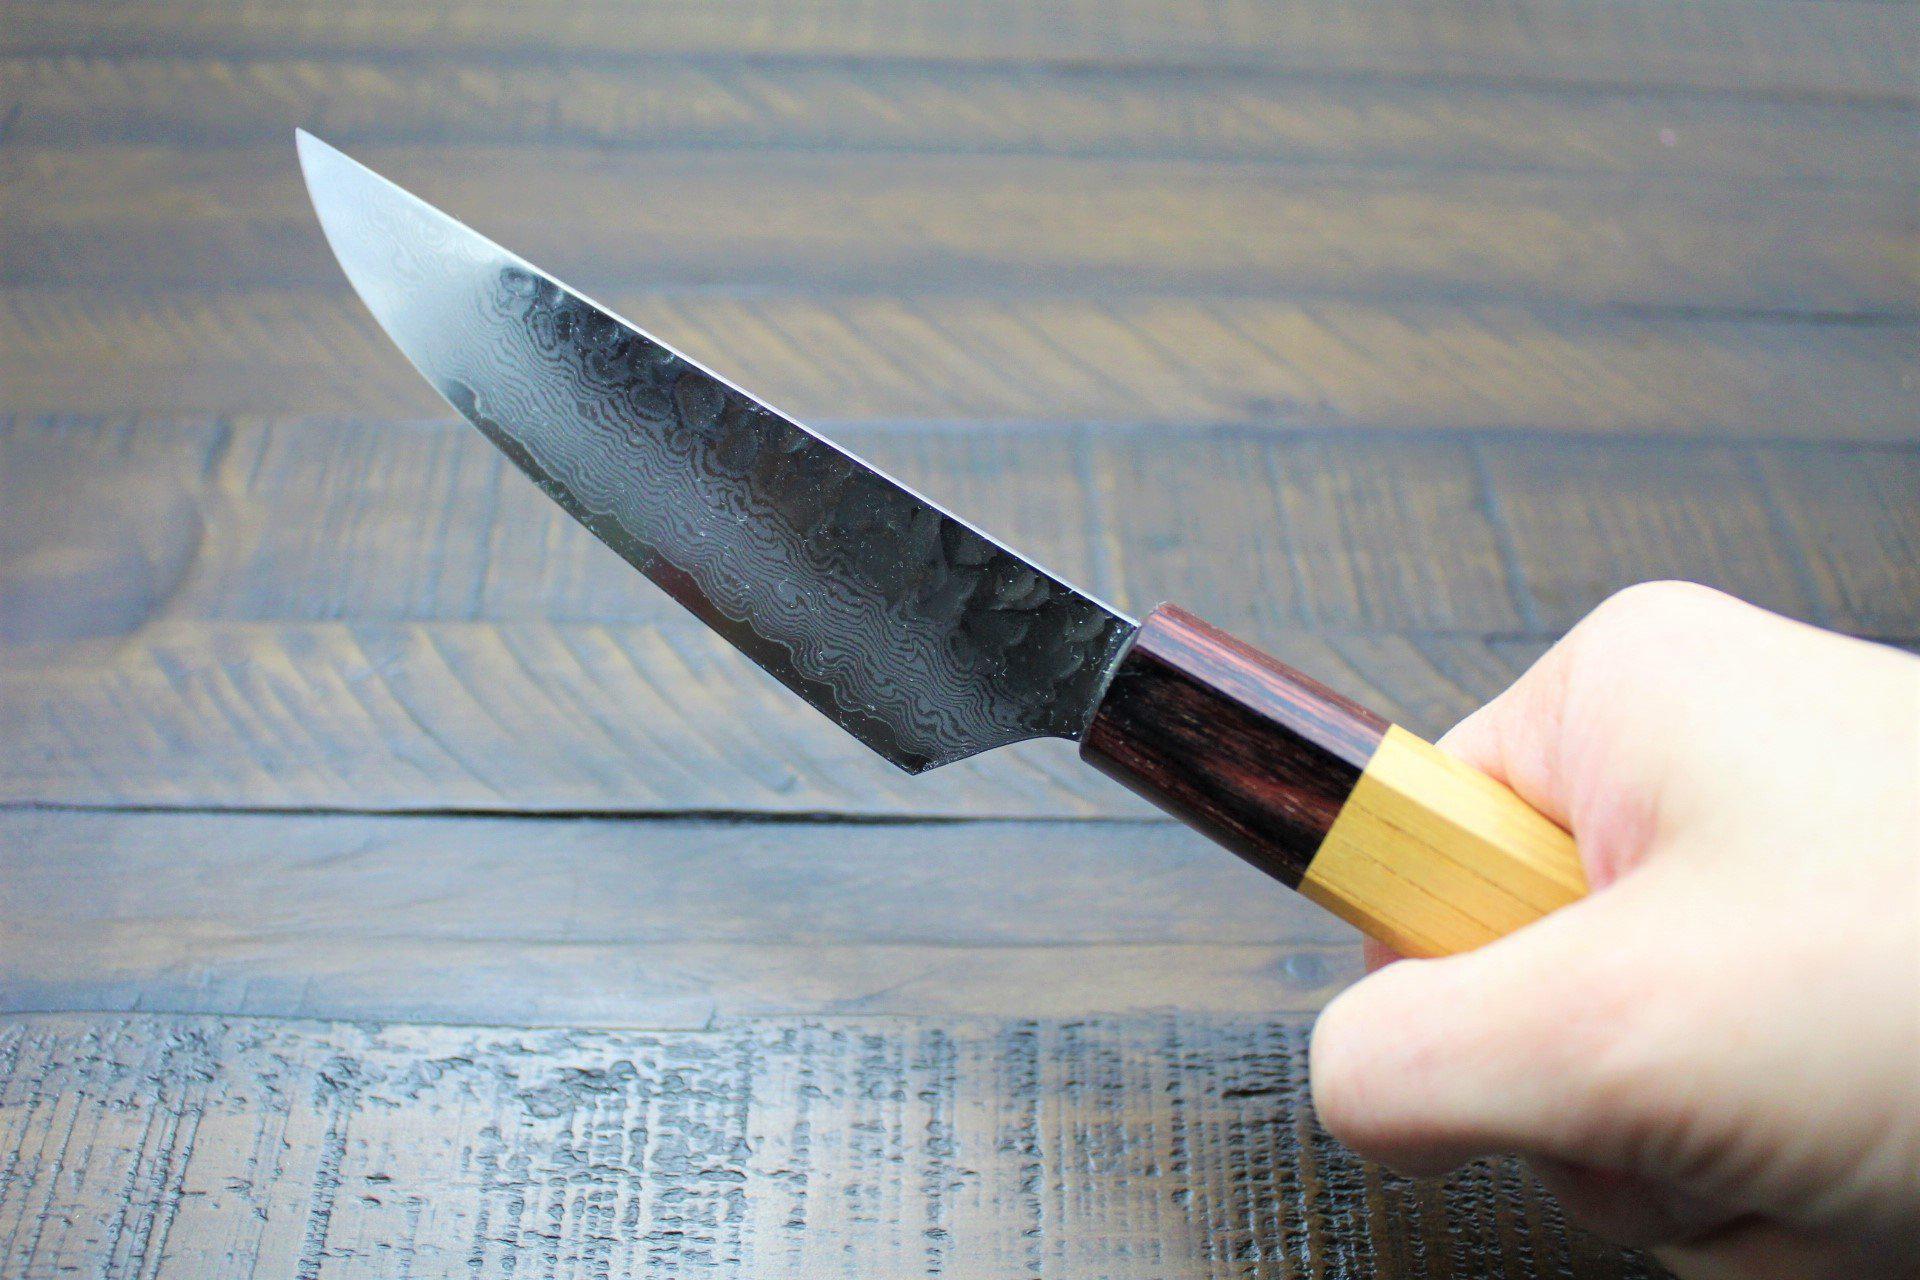 Sakai Takayuki, Steak Knife